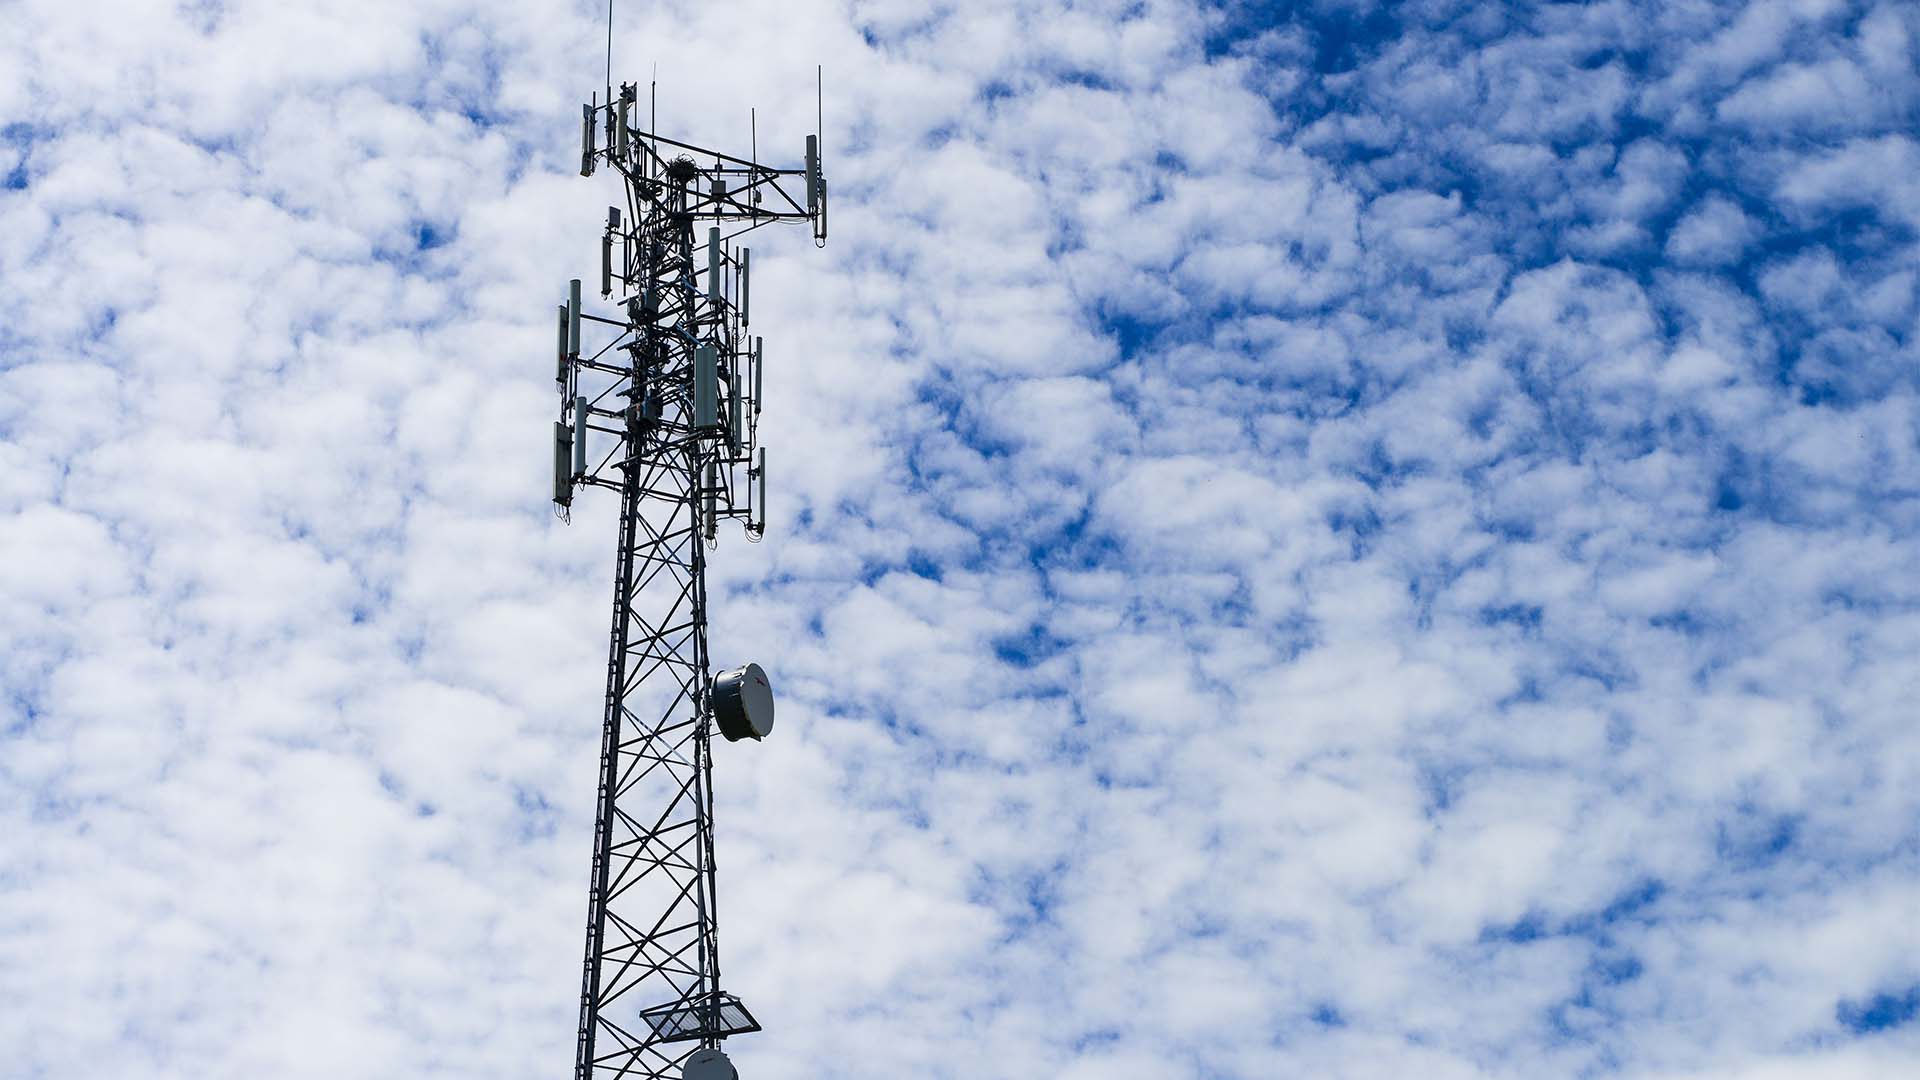 L’objectif sera d’analyser de «bout à bout» le réseau 5G, des antennes jusqu’aux interactions avec les applications sur les téléphones et l’internet mobile, pour voir où des gains d’économie d’énergie sont possibles grâce à des algorithmes, explique le chef du site d’Ericsson à Montréal, Paul Baptista.